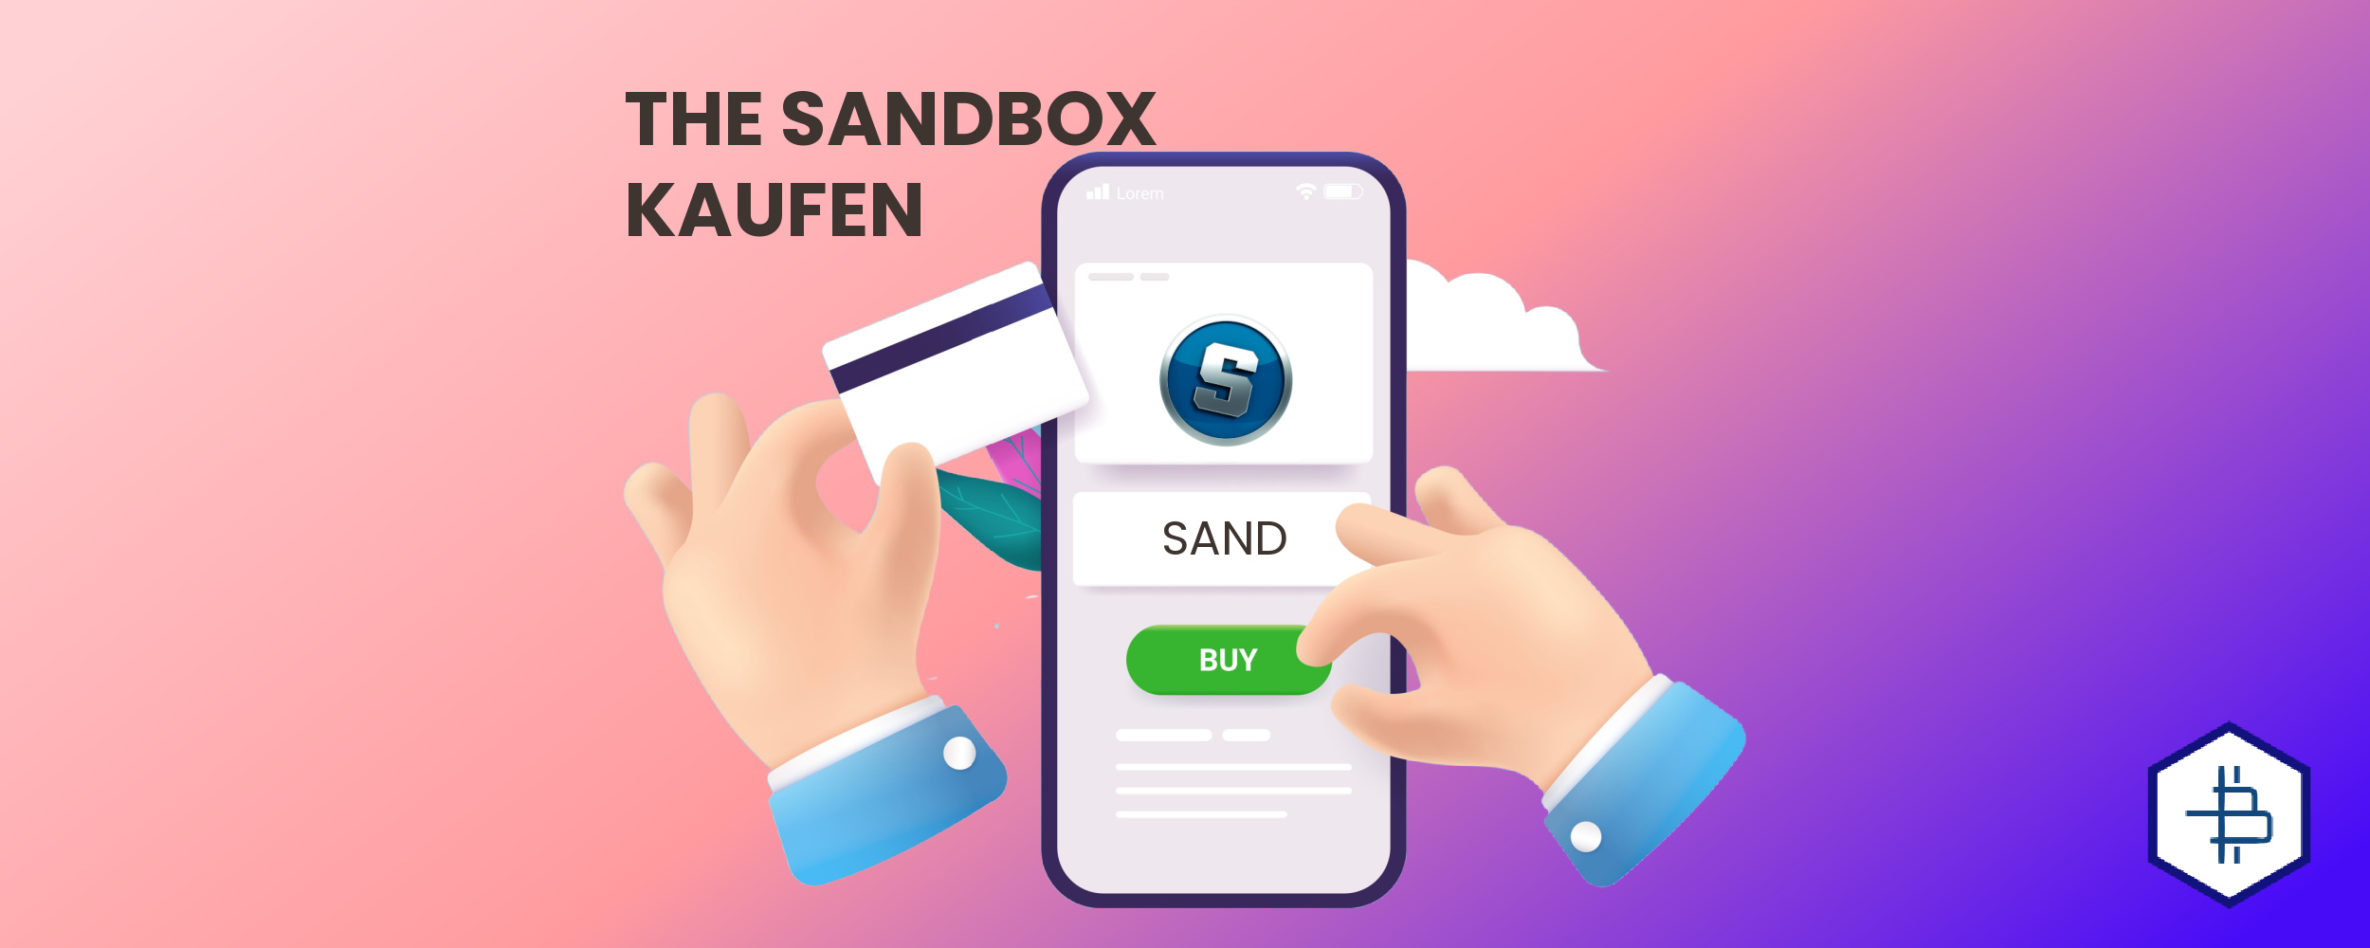 The Sandbox kaufen